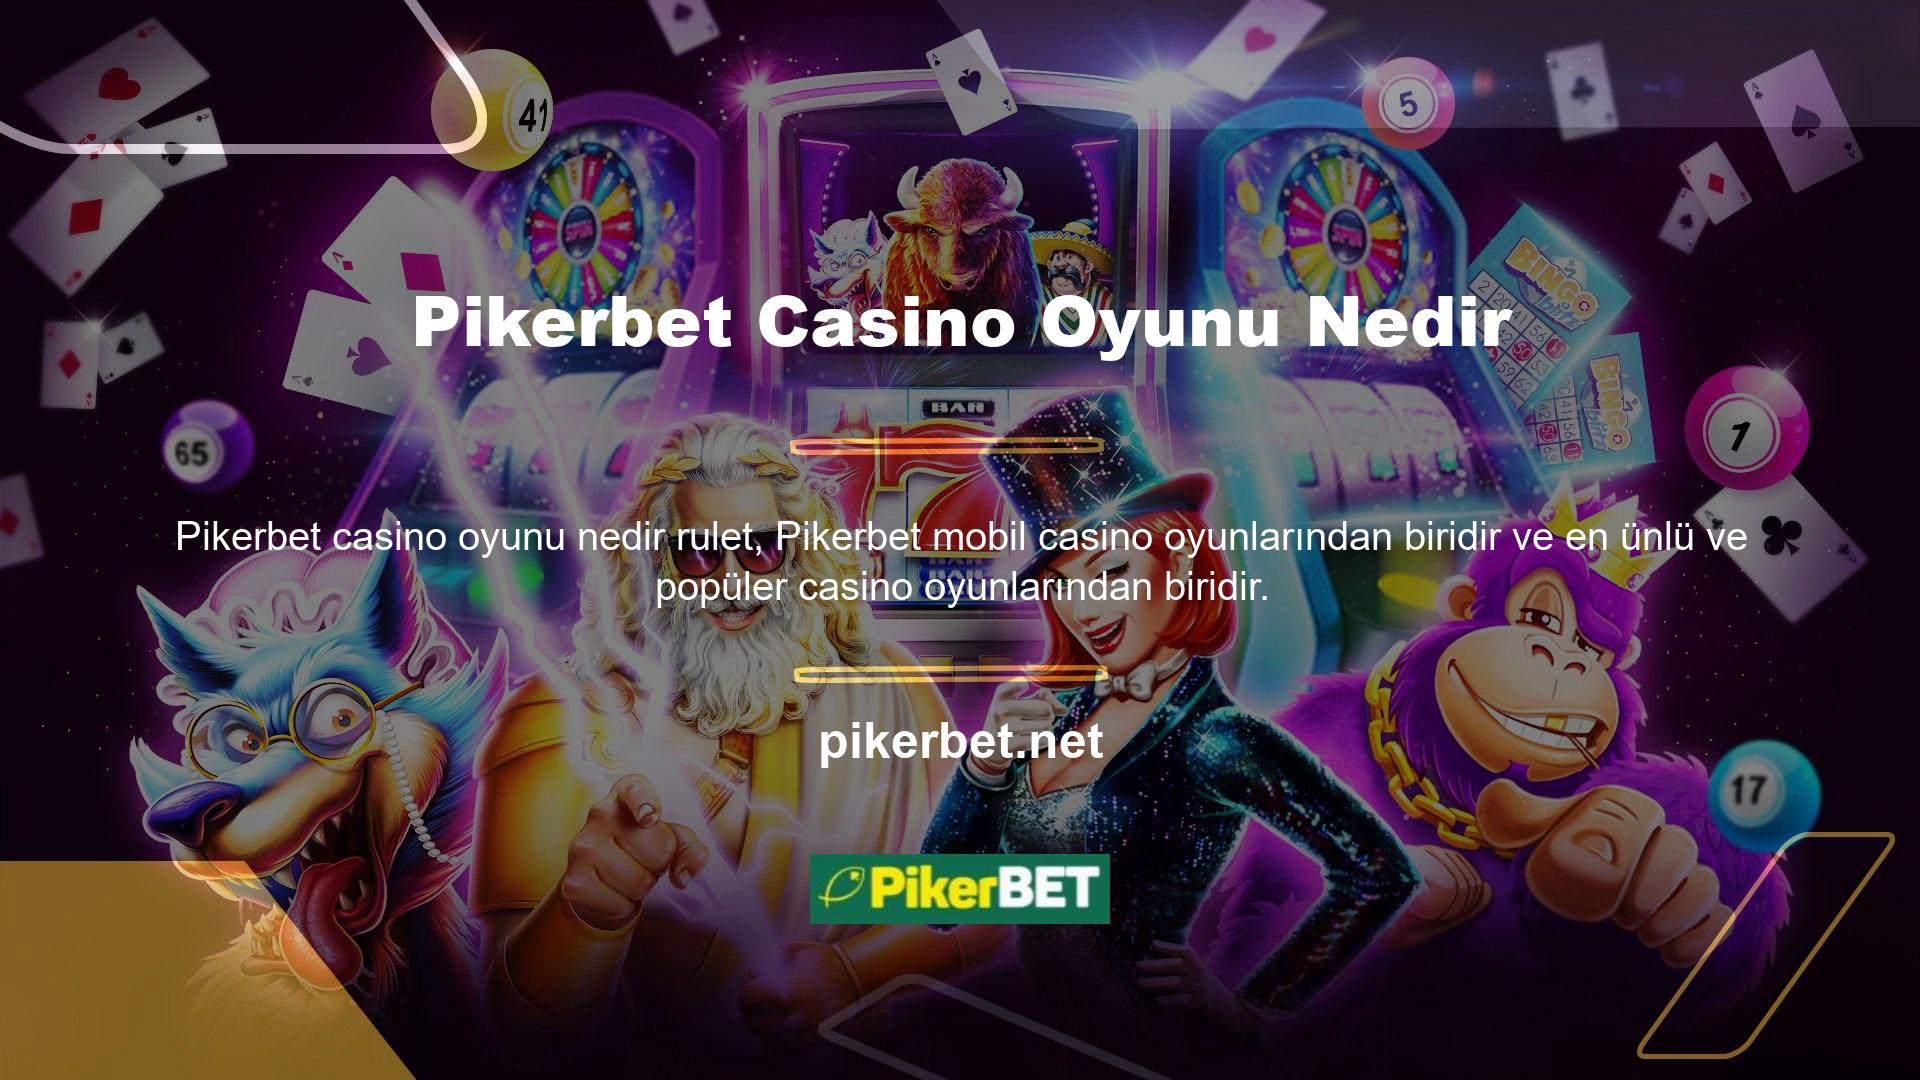 Casino denildiğinde akla ilk gelen rulet olsa da onlarda da canlı oyunlar ve normal oyunlar bulunmaktadır